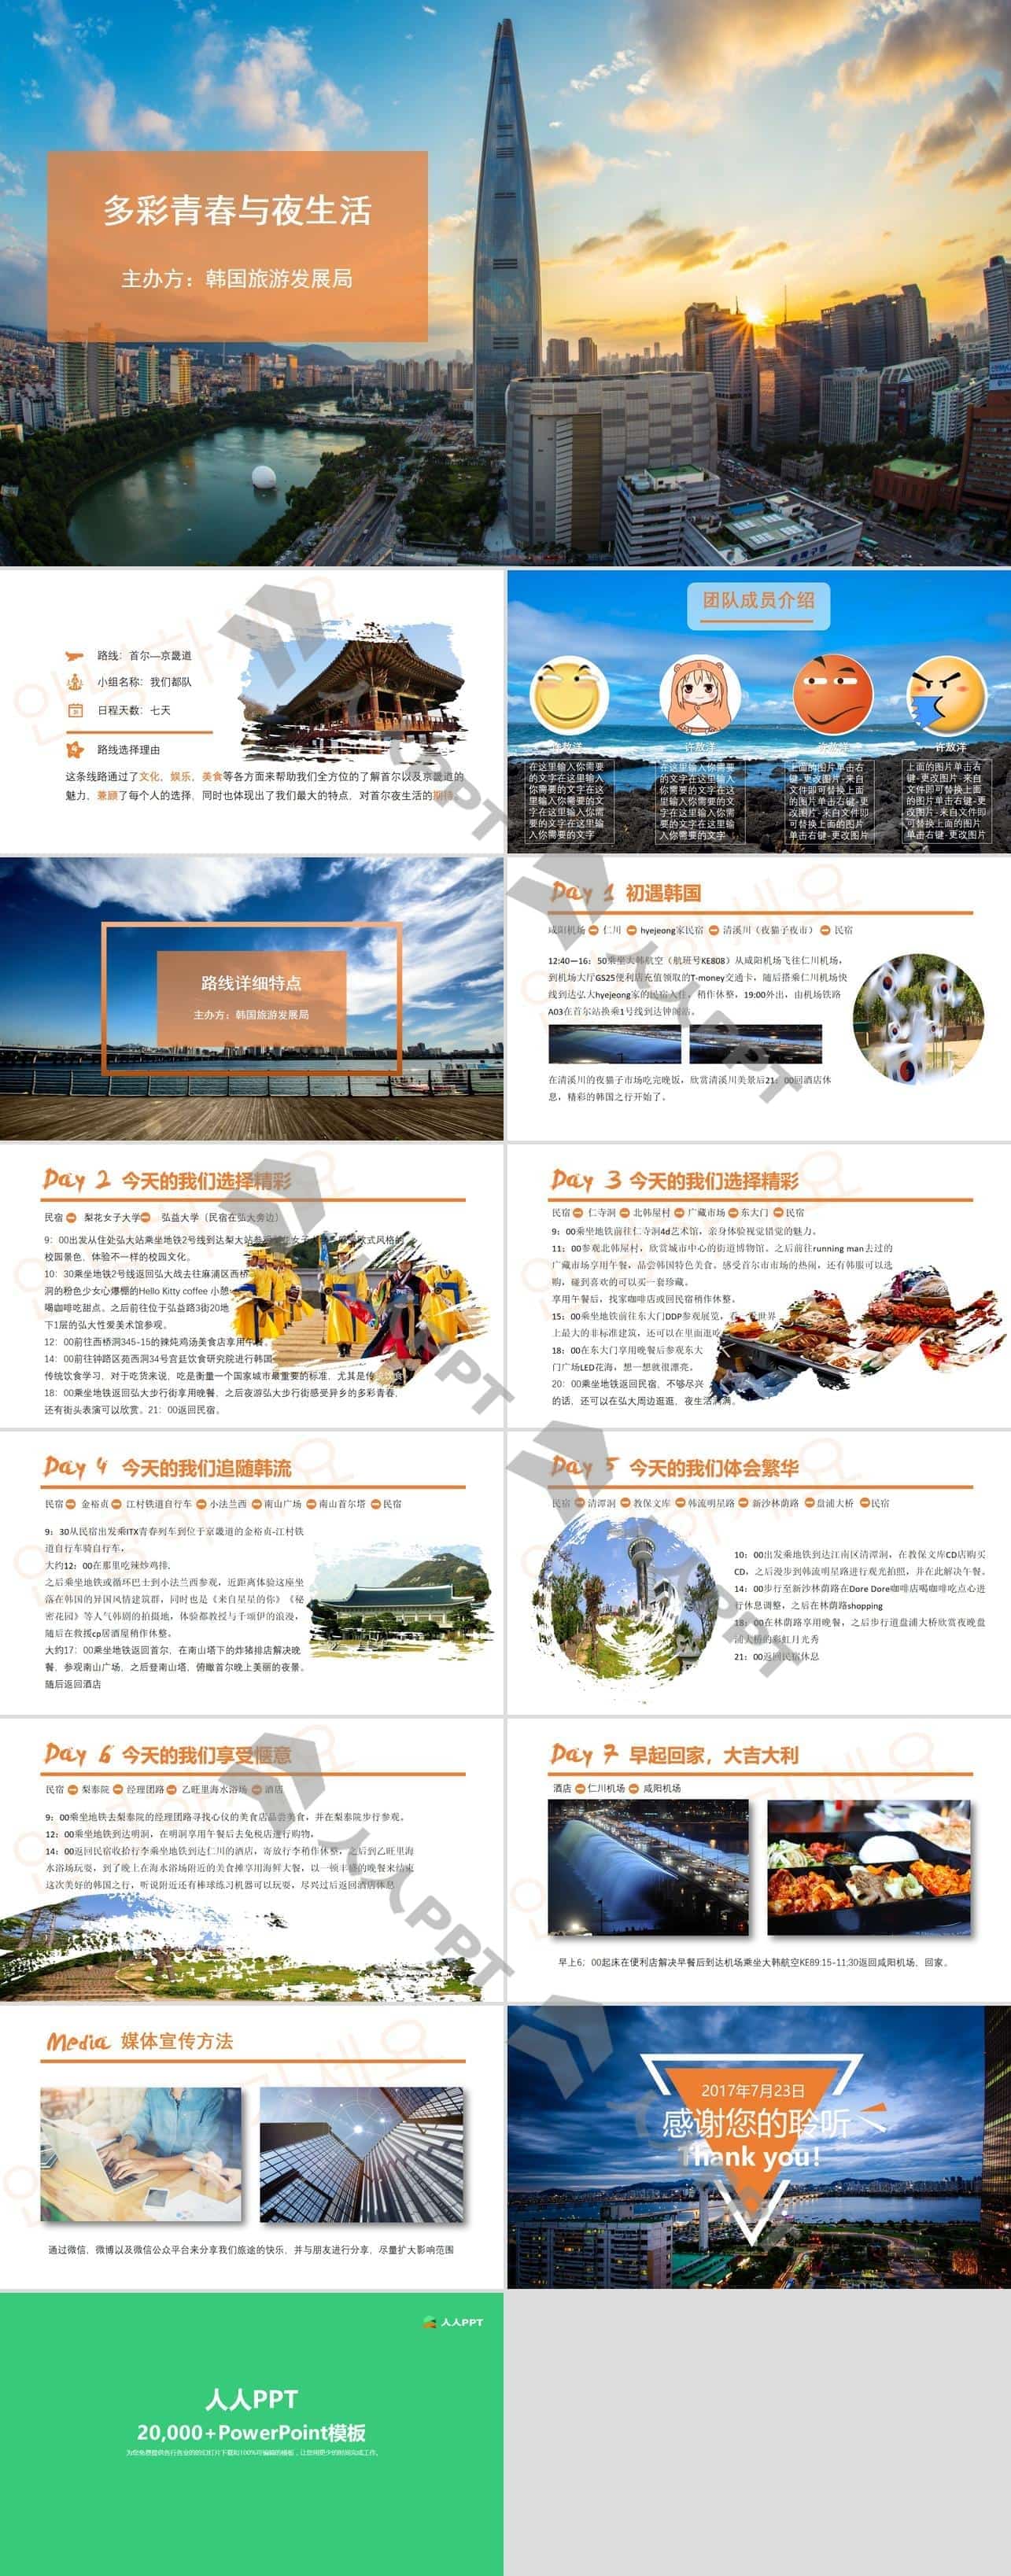 韩国旅游线路介绍与宣传方案PPT模板长图